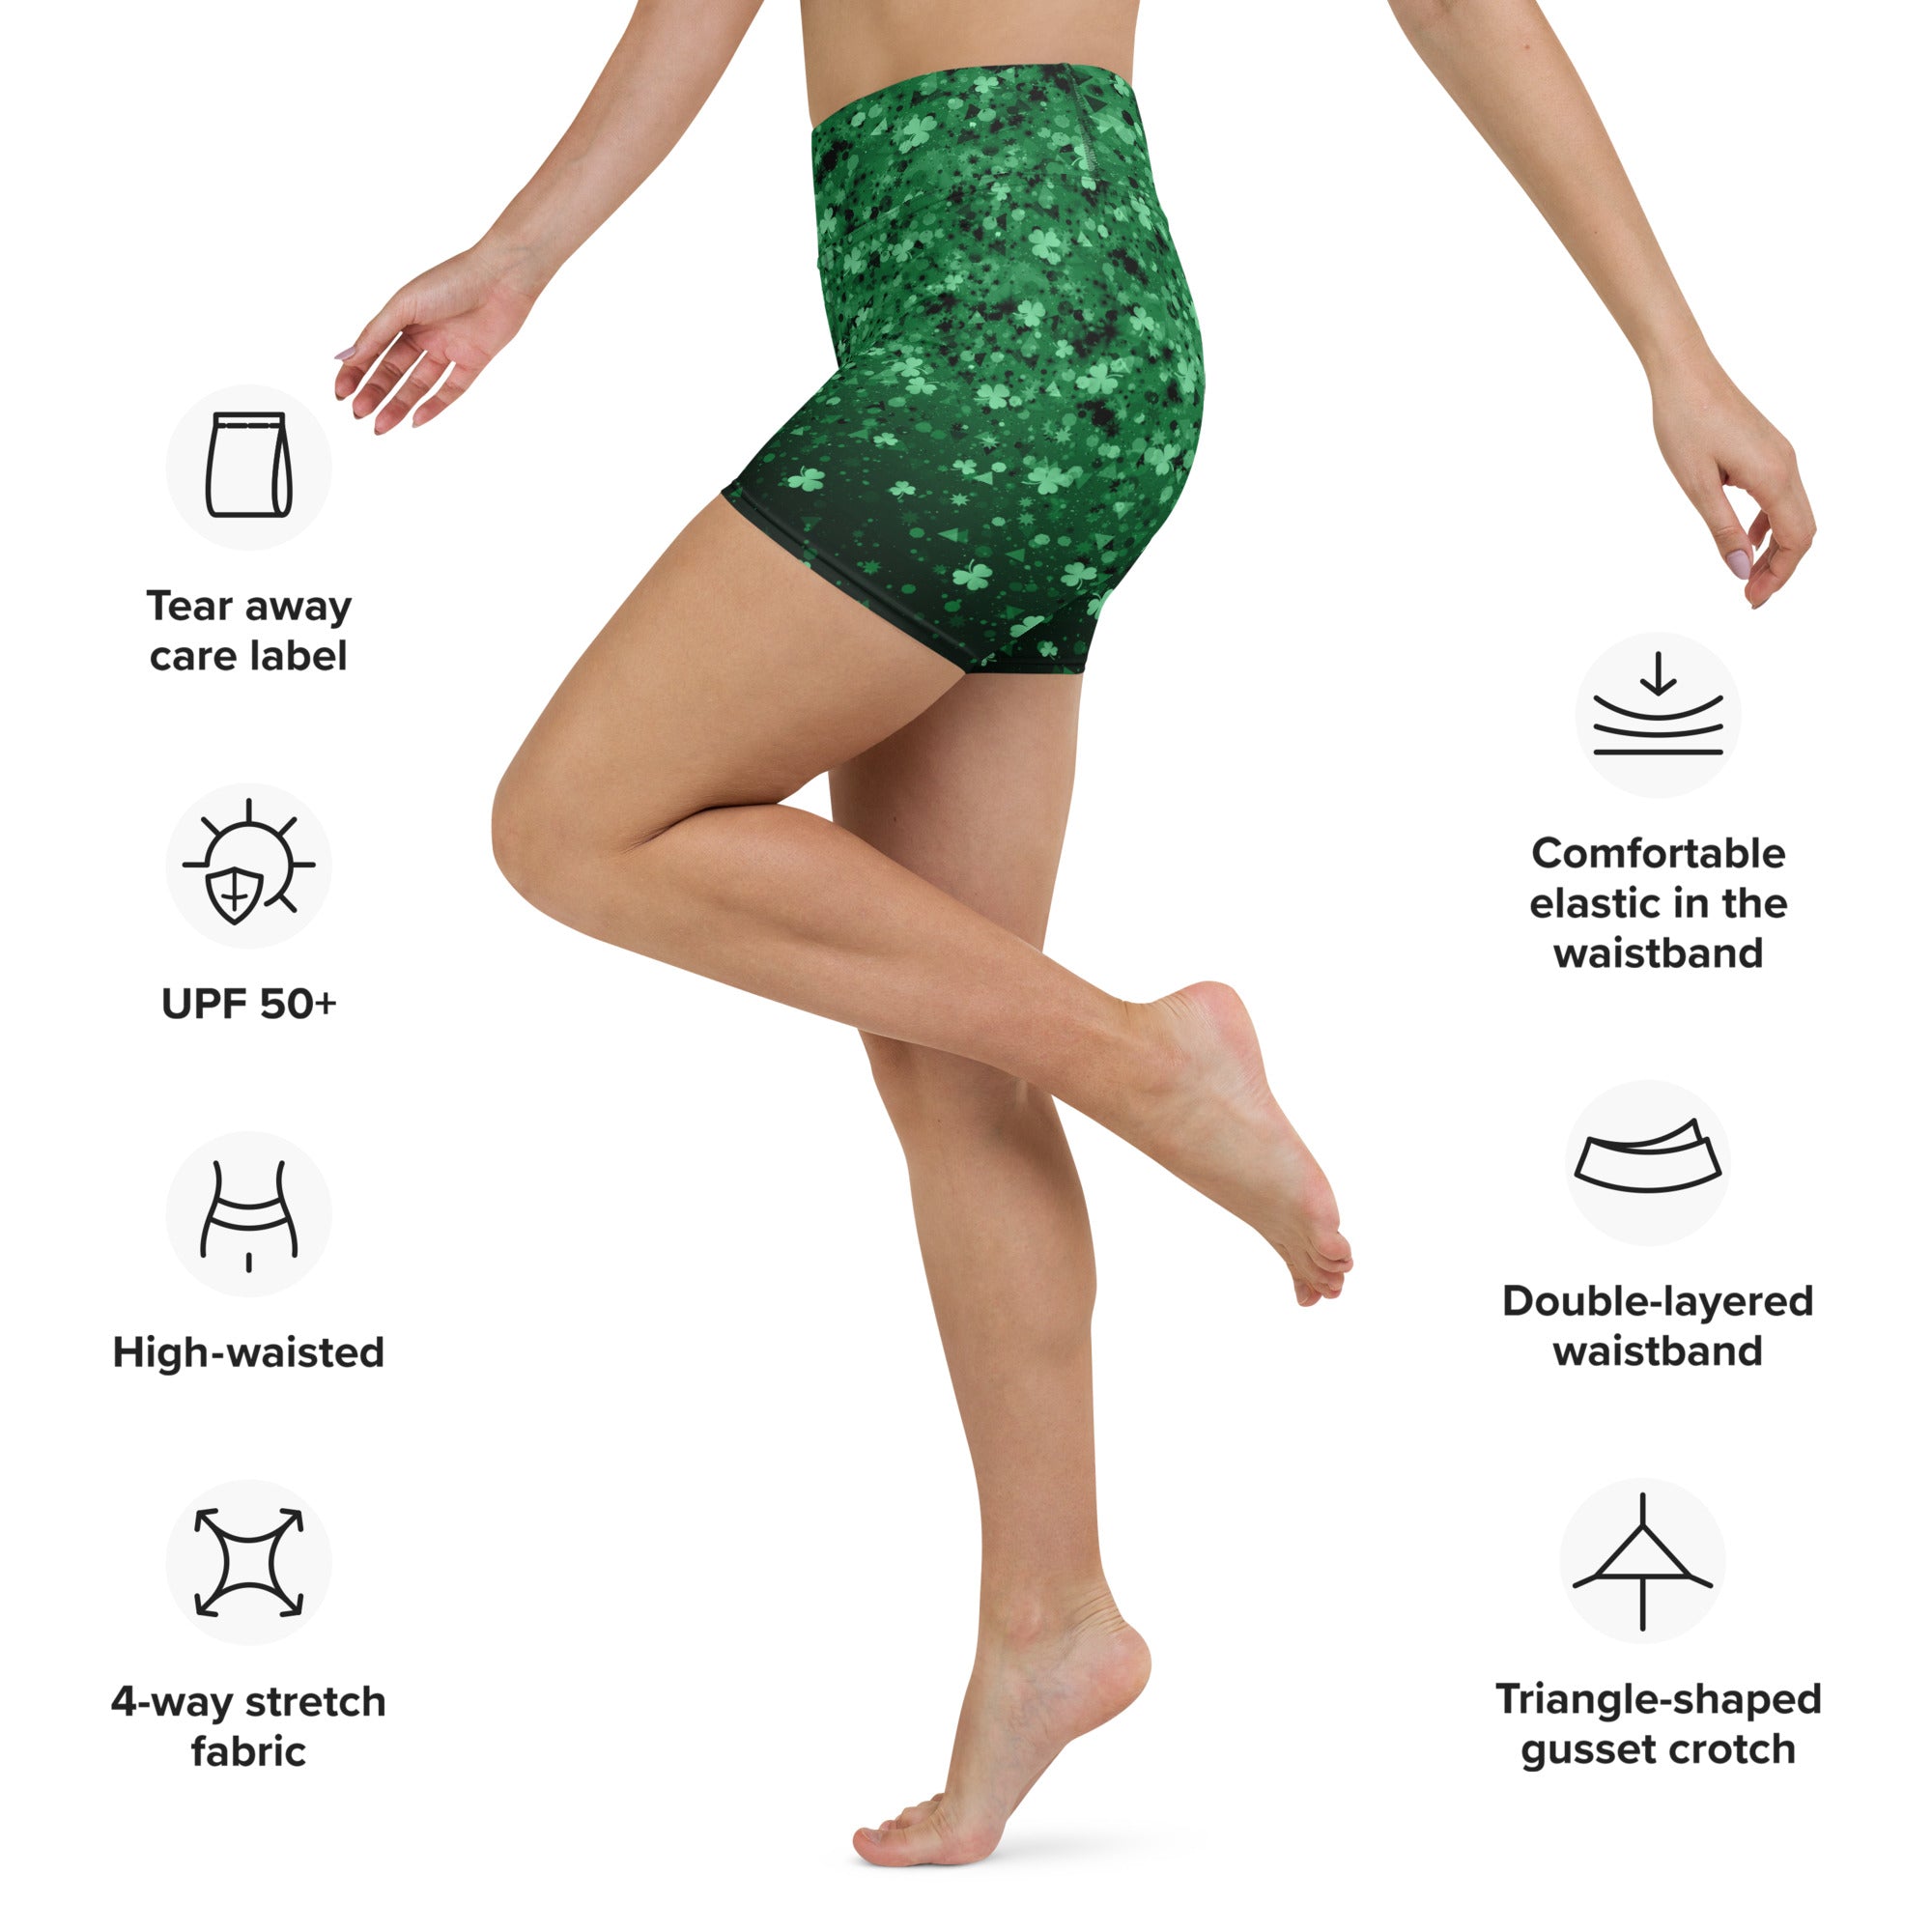 St. Patrick's Day Glitter Print Yoga Shorts